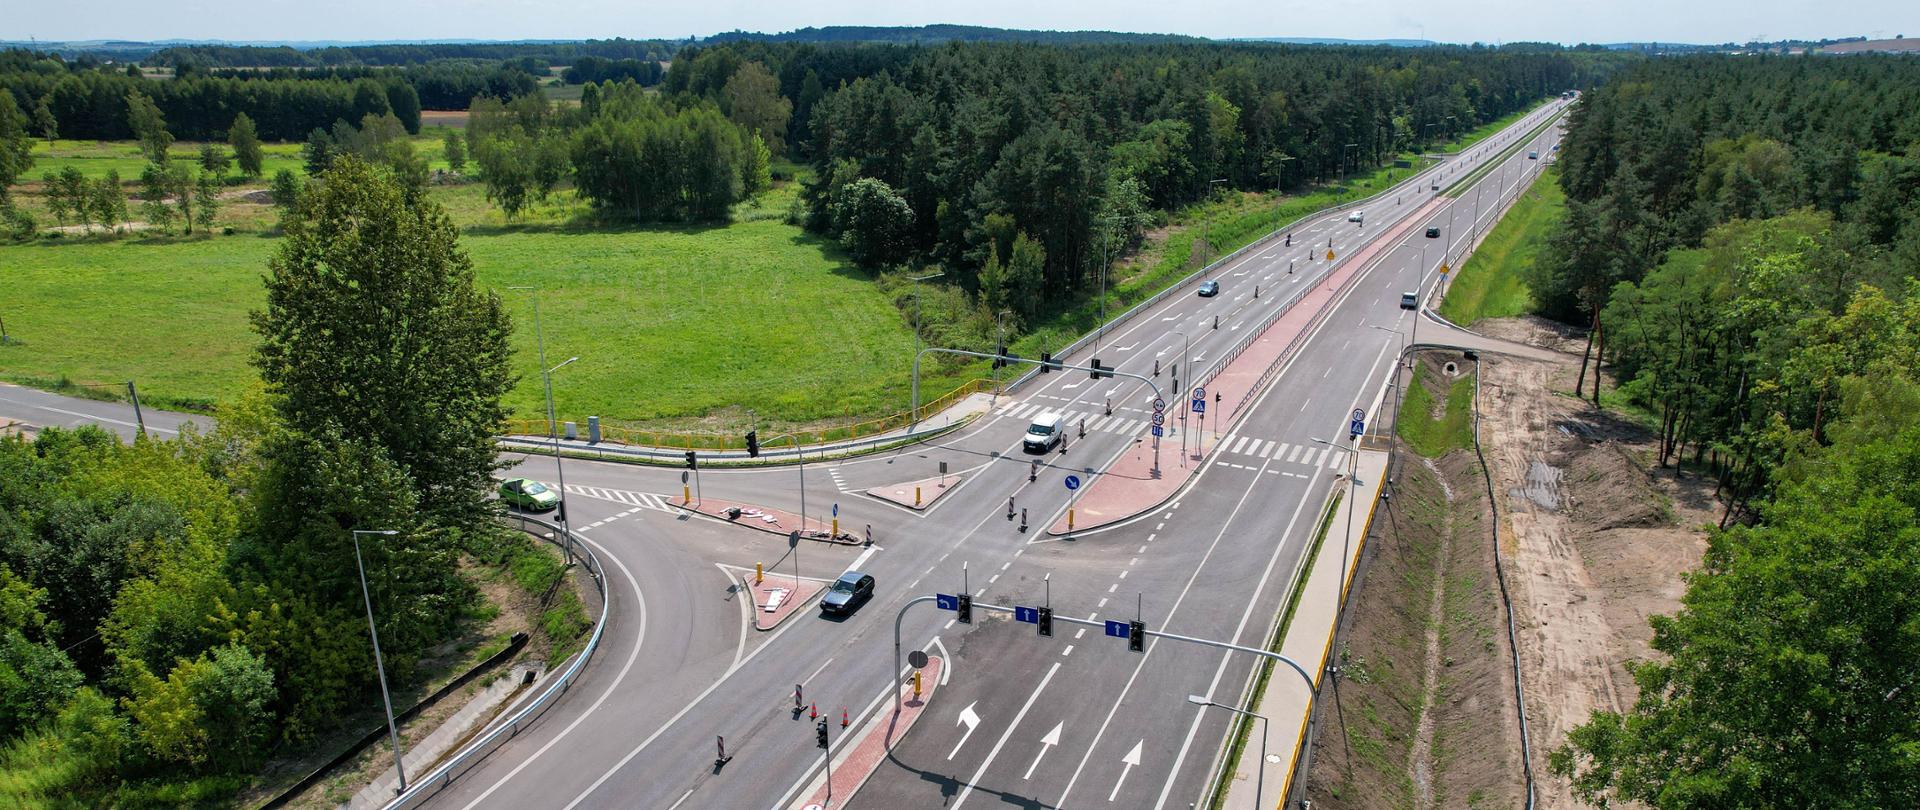 Na zdjęciu widzimy lotniczy widok na odcinek przebudowanej drogi krajowej nr 91 Markowice-Brudzowice oraz mniejszą drogę, która krzyżuje się z nią. Droga ma dwie jezdnie i wiele pasów ruchu w obu kierunkach, oddzielonych środkowym pasem z barierami. Na drodze poruszają się pojazdy, w tym samochody i ciężarówki, co wskazuje na ruch drogowy. Po obu stronach drogi znajduje się bujna zieleń z drzewami i trawiastymi obszarami. Niebo jest bezchmurne z niewielką ilością chmur, sugerując dobre warunki pogodowe.
To interesujące zdjęcie ukazuje infrastrukturę drogową i jej integrację z otaczającą przyrodą i zabudową.